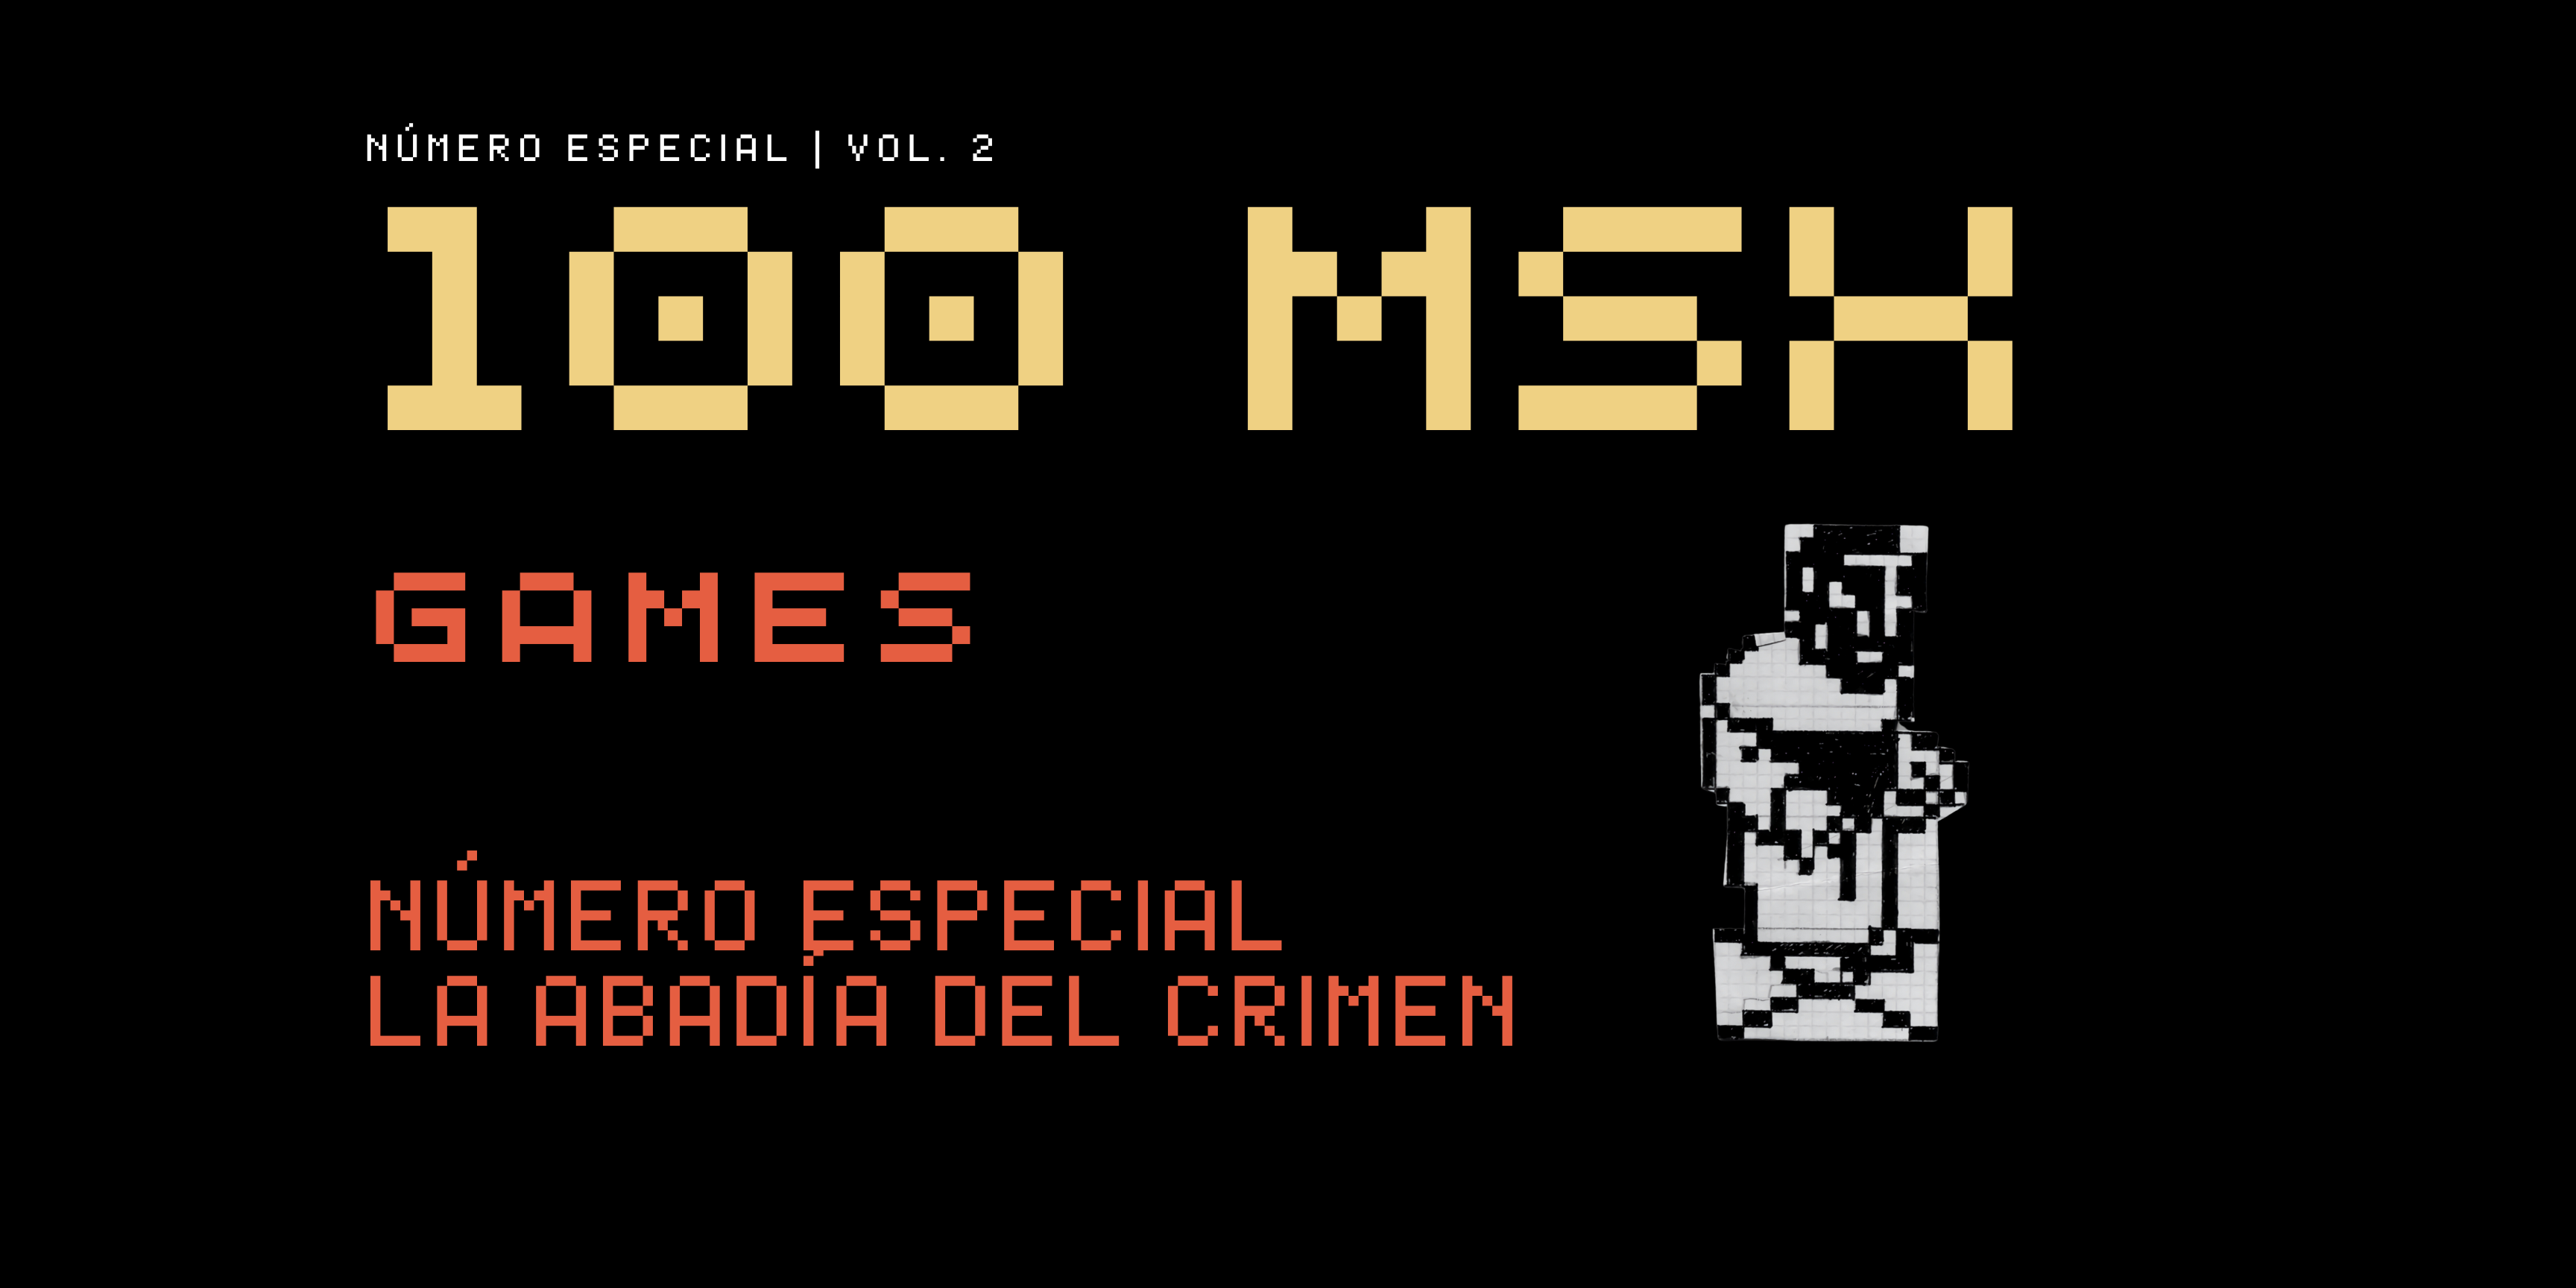 100 MSX GAMES vol.2 Especial La Abadía del Crimen